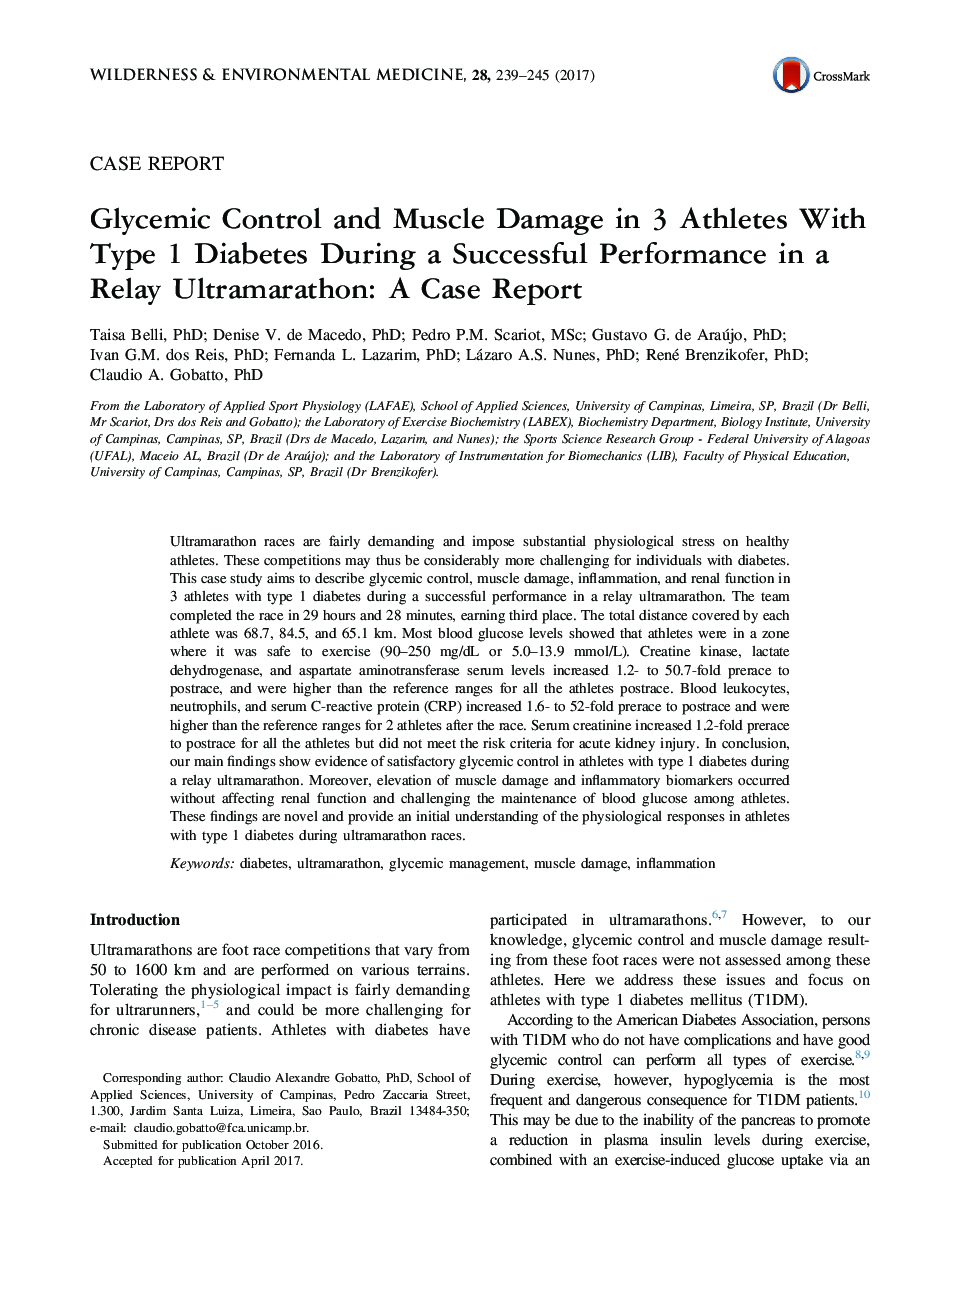 کنترل گلیکوزمی و آسیب عضلانی در 3 ورزشکار مبتلا به دیابت نوع 1 در طی یک عملکرد موفق در یک فوق ماراتون رله: گزارش موردی